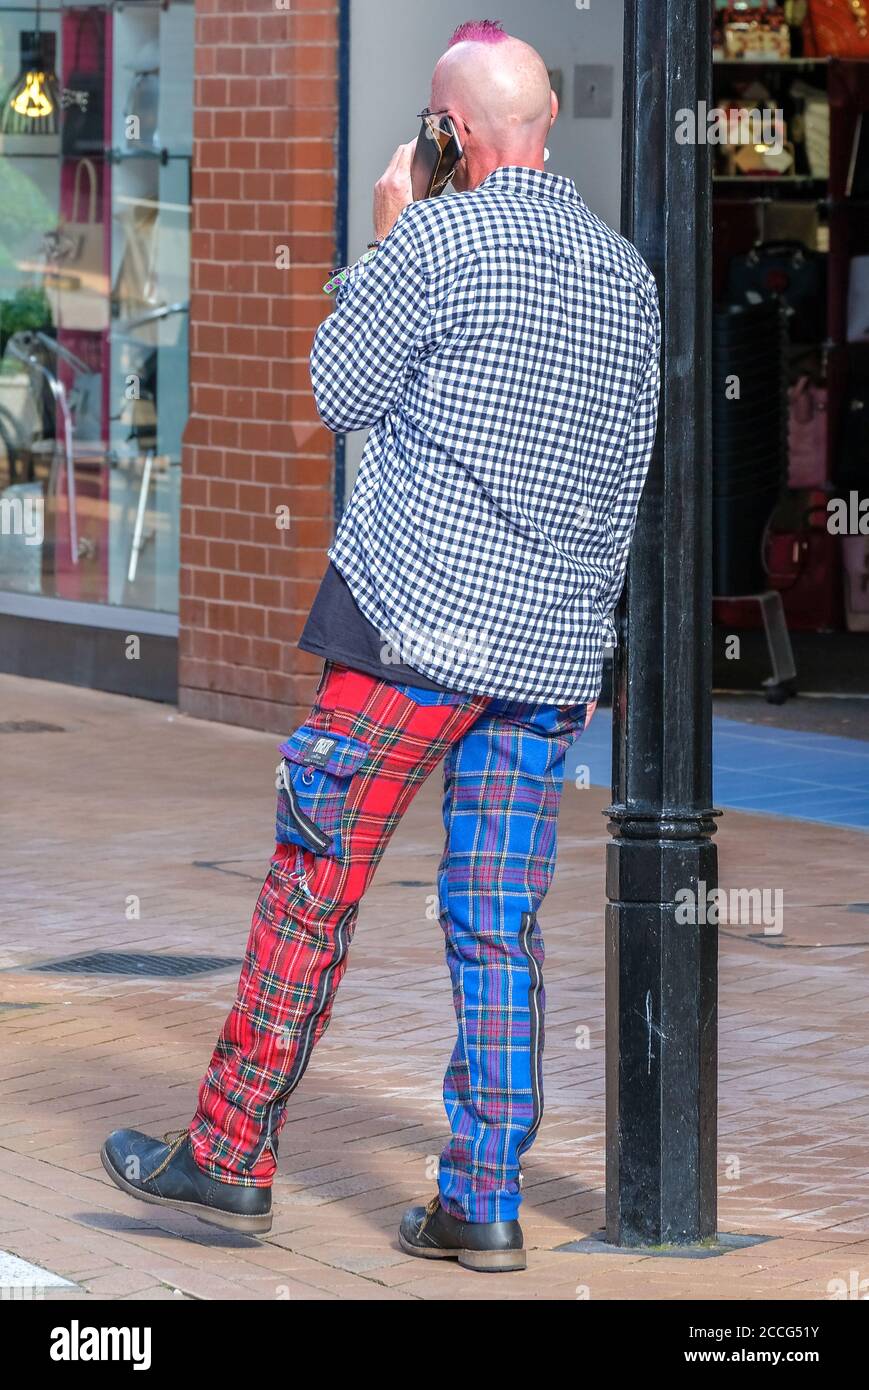 Punk, der sich an der Laternenpfosten lehnt, und eine abwechselnd blau/rot  karierte Hose Stockfotografie - Alamy